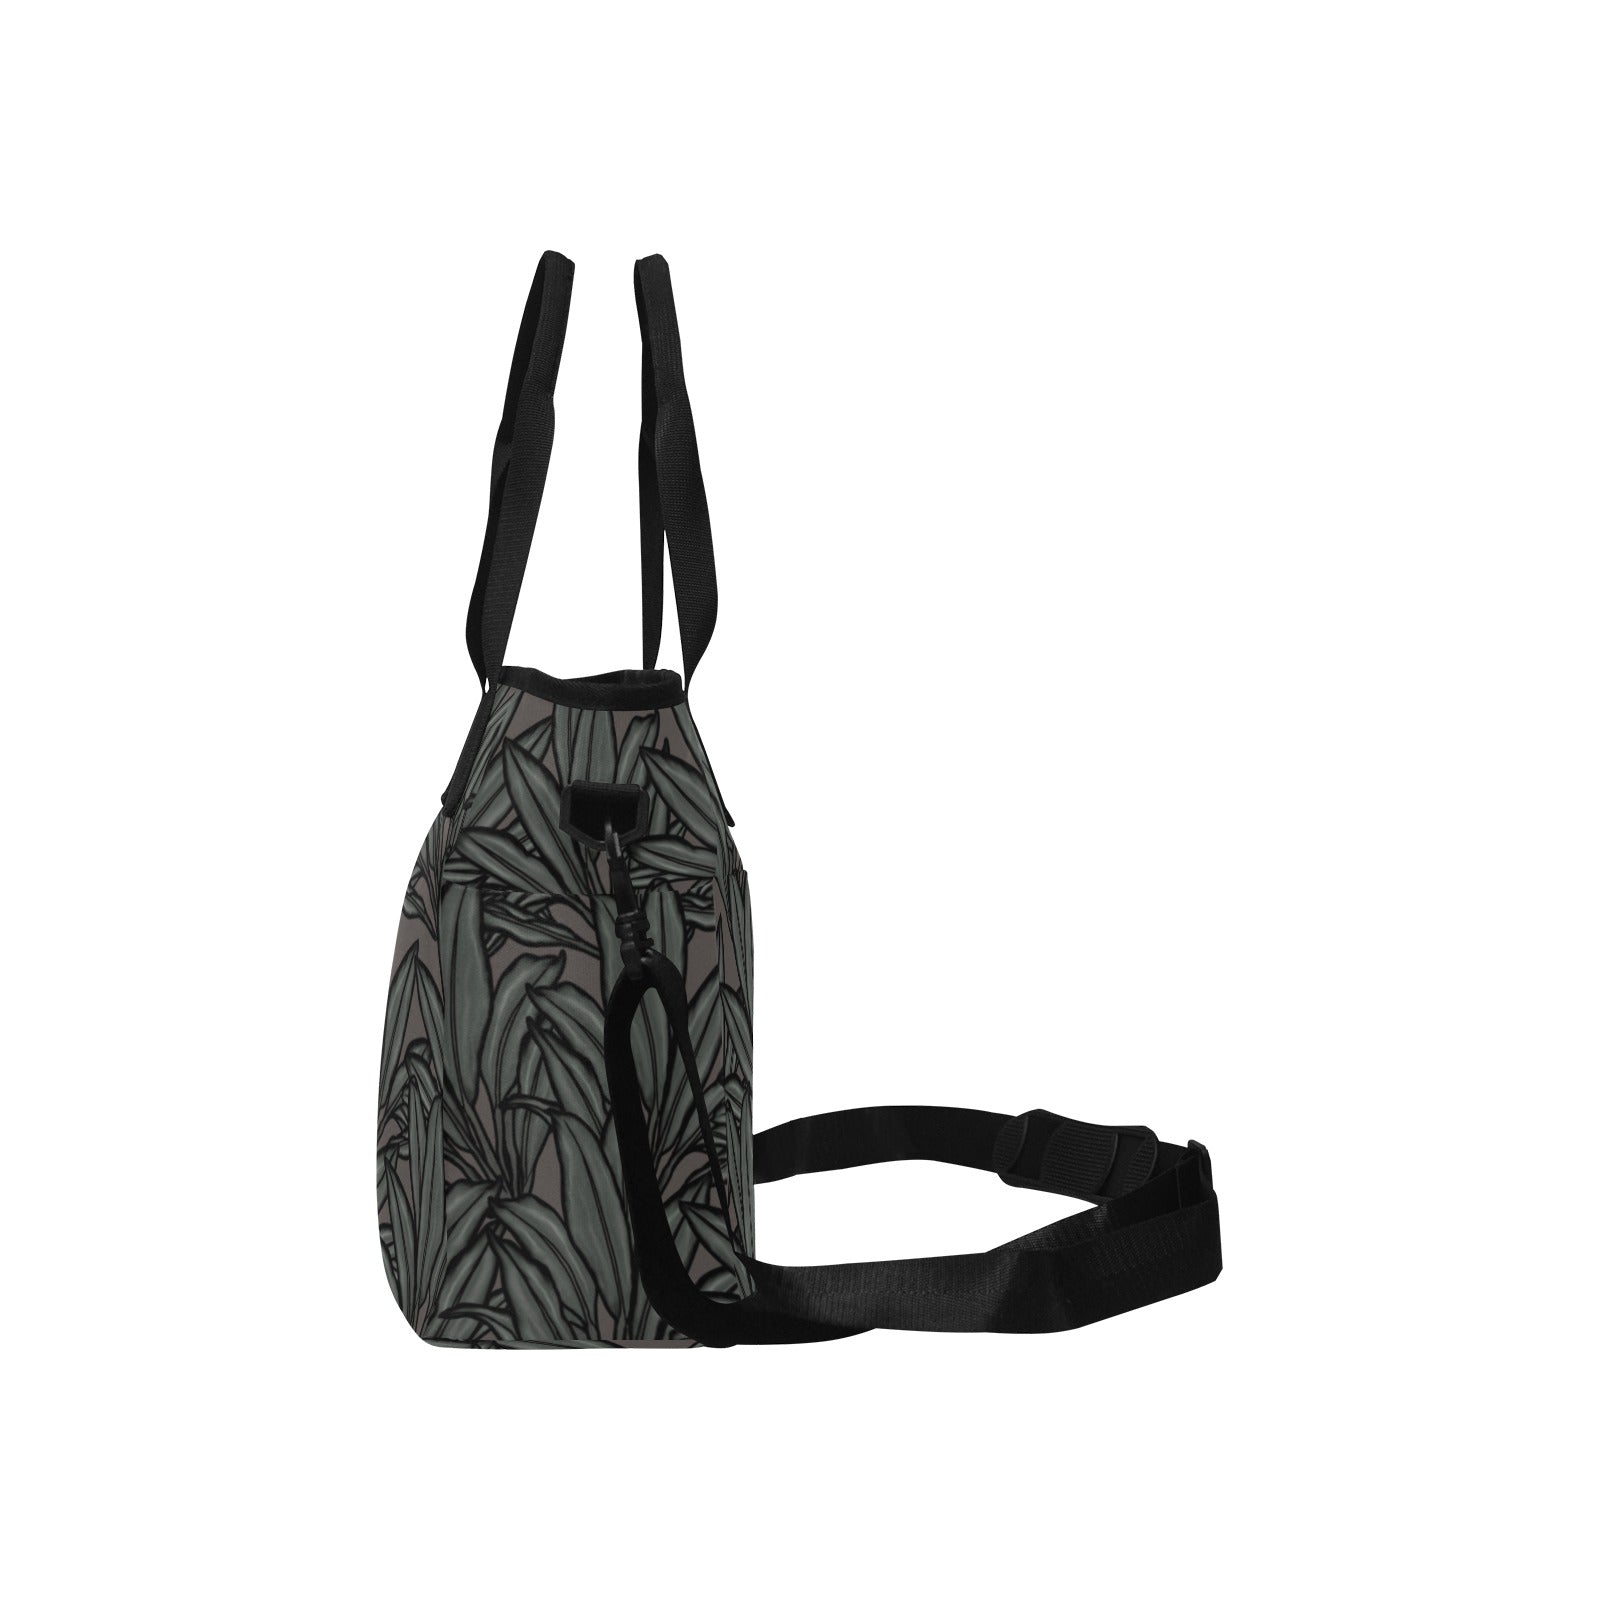 La'i Tote Bag with Shoulder Strap Tote Bag with Shoulder Strap